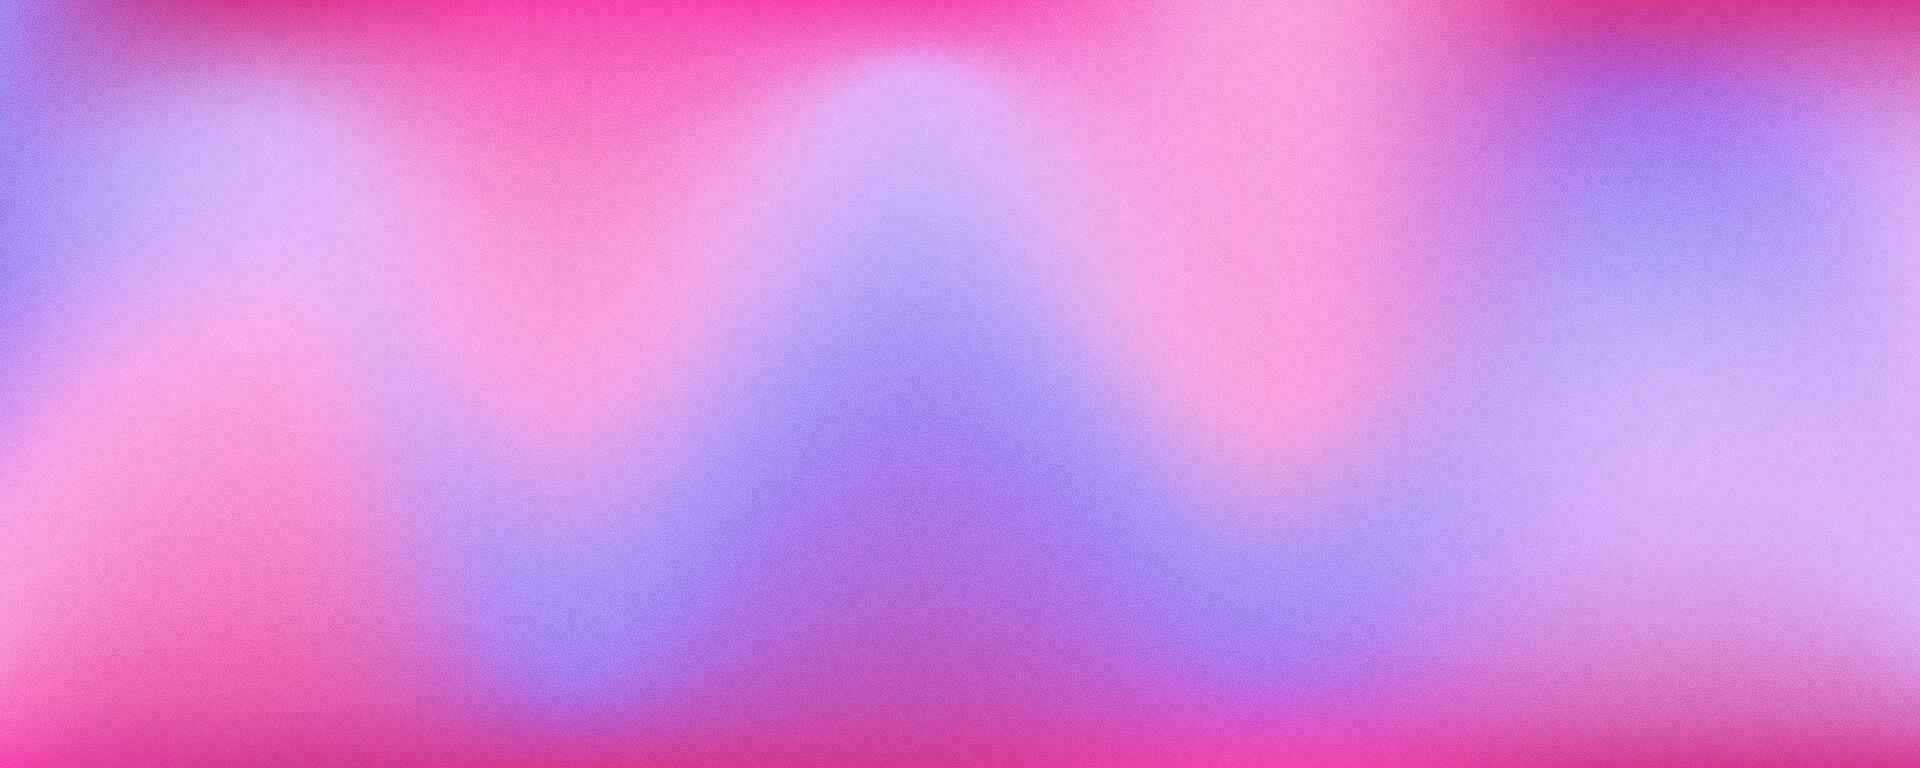 lutning färgad bakgrund. mjuk rosa och violett kornig gradering. suddig retro affisch med abstrakt ljud textur. vektor